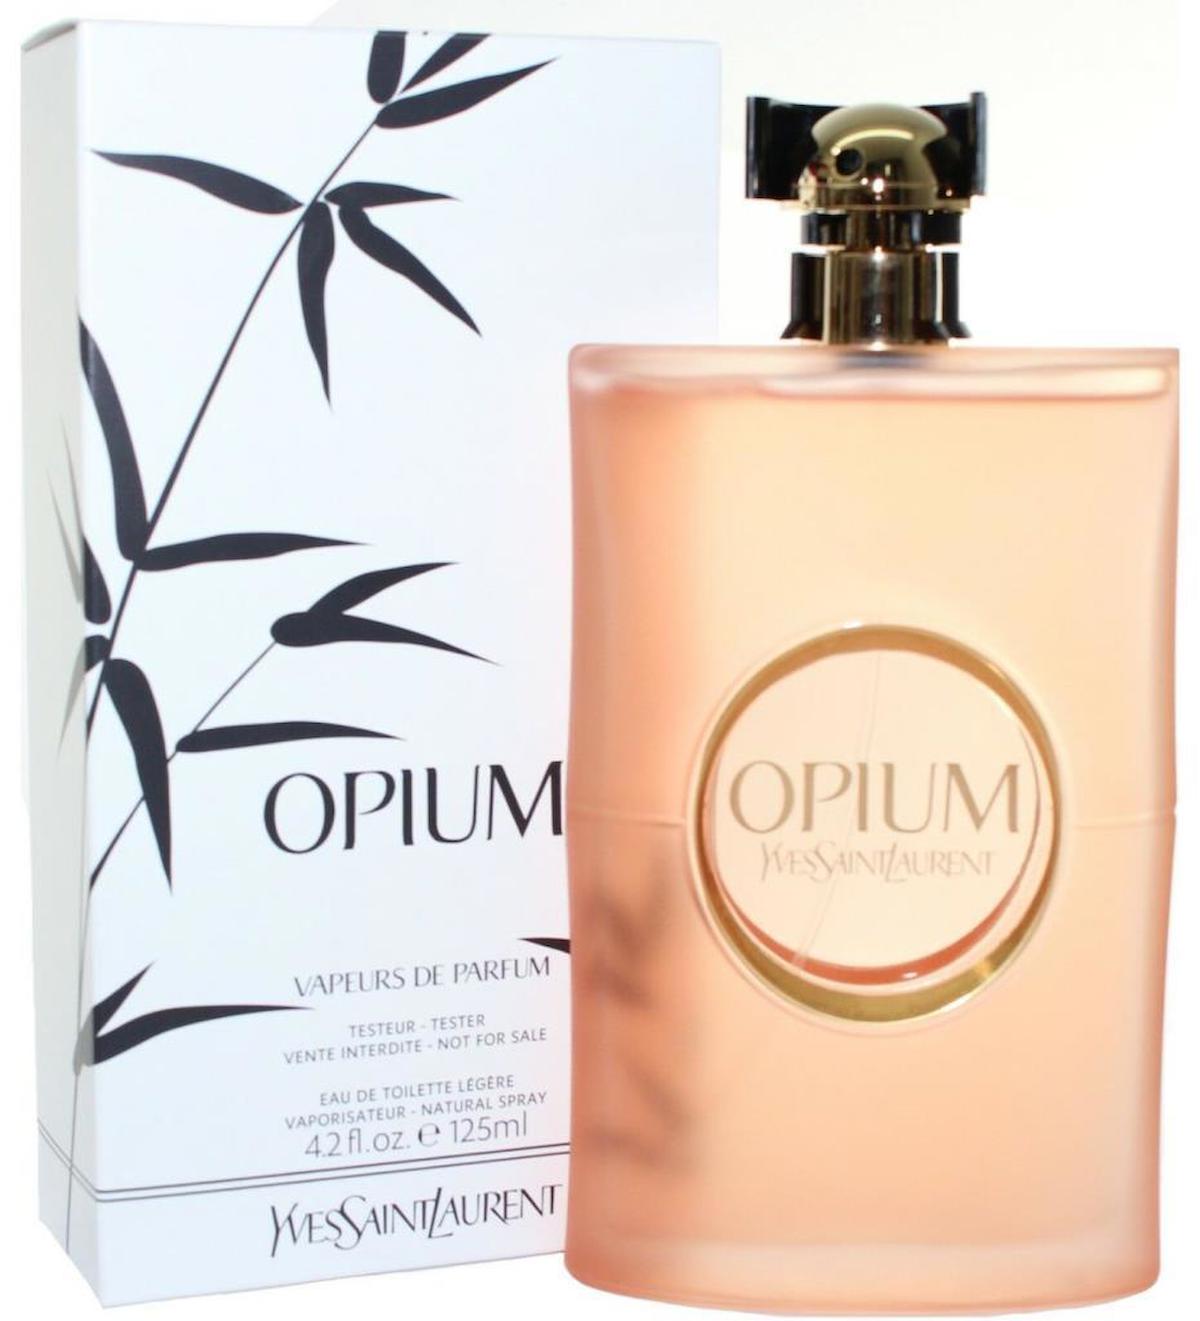 Yves Saint Laurent Opium Vapeurs Refill EDP Beyaz Çiçek-Reçine Kadın Parfüm 125 ml